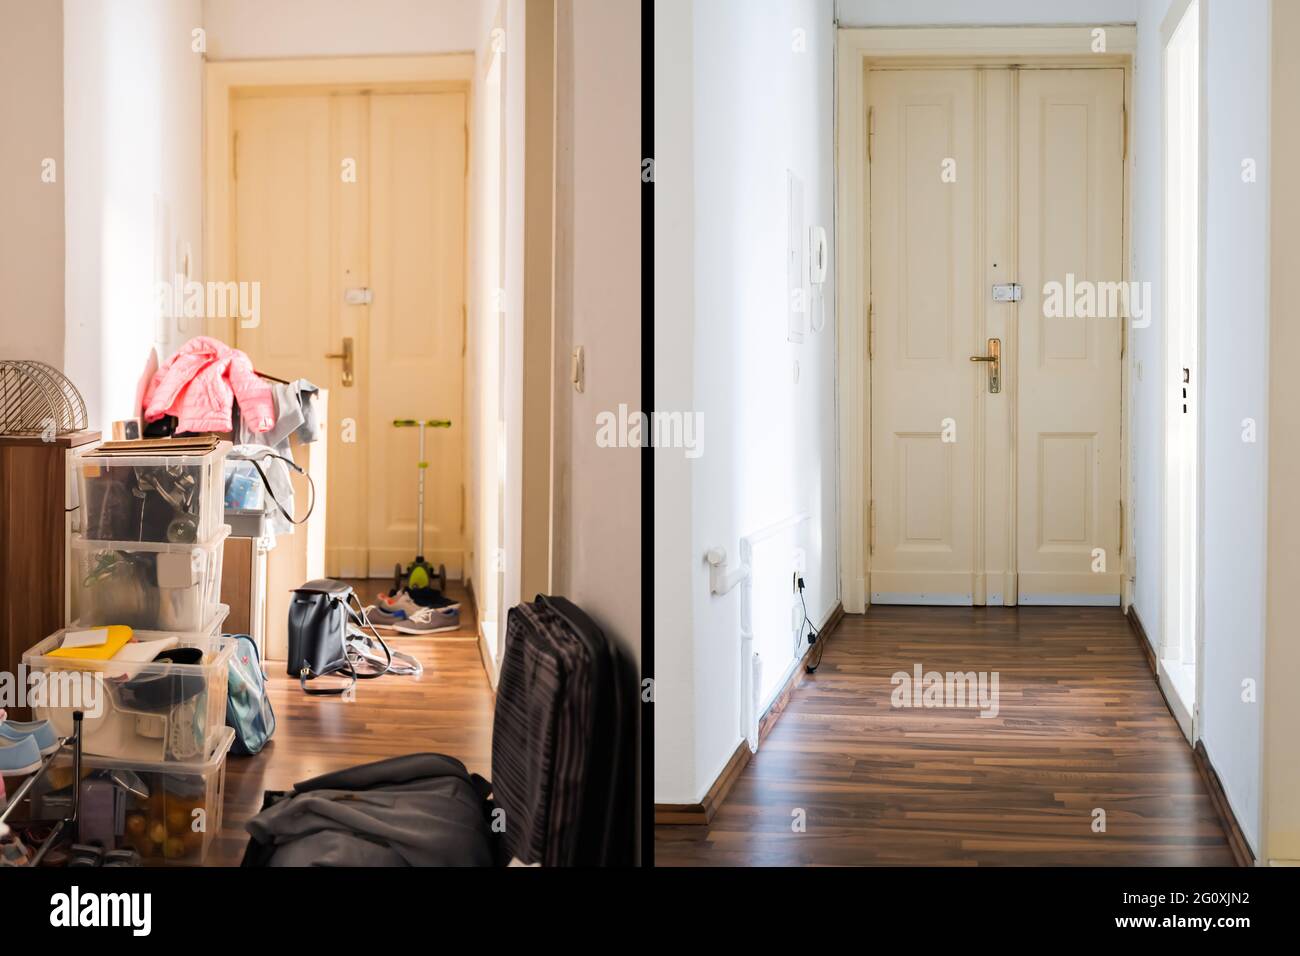 Raumaufdeckvorrichtung Vor Und Nach Dem Zimmer. Unordentliches Haus Stockfoto